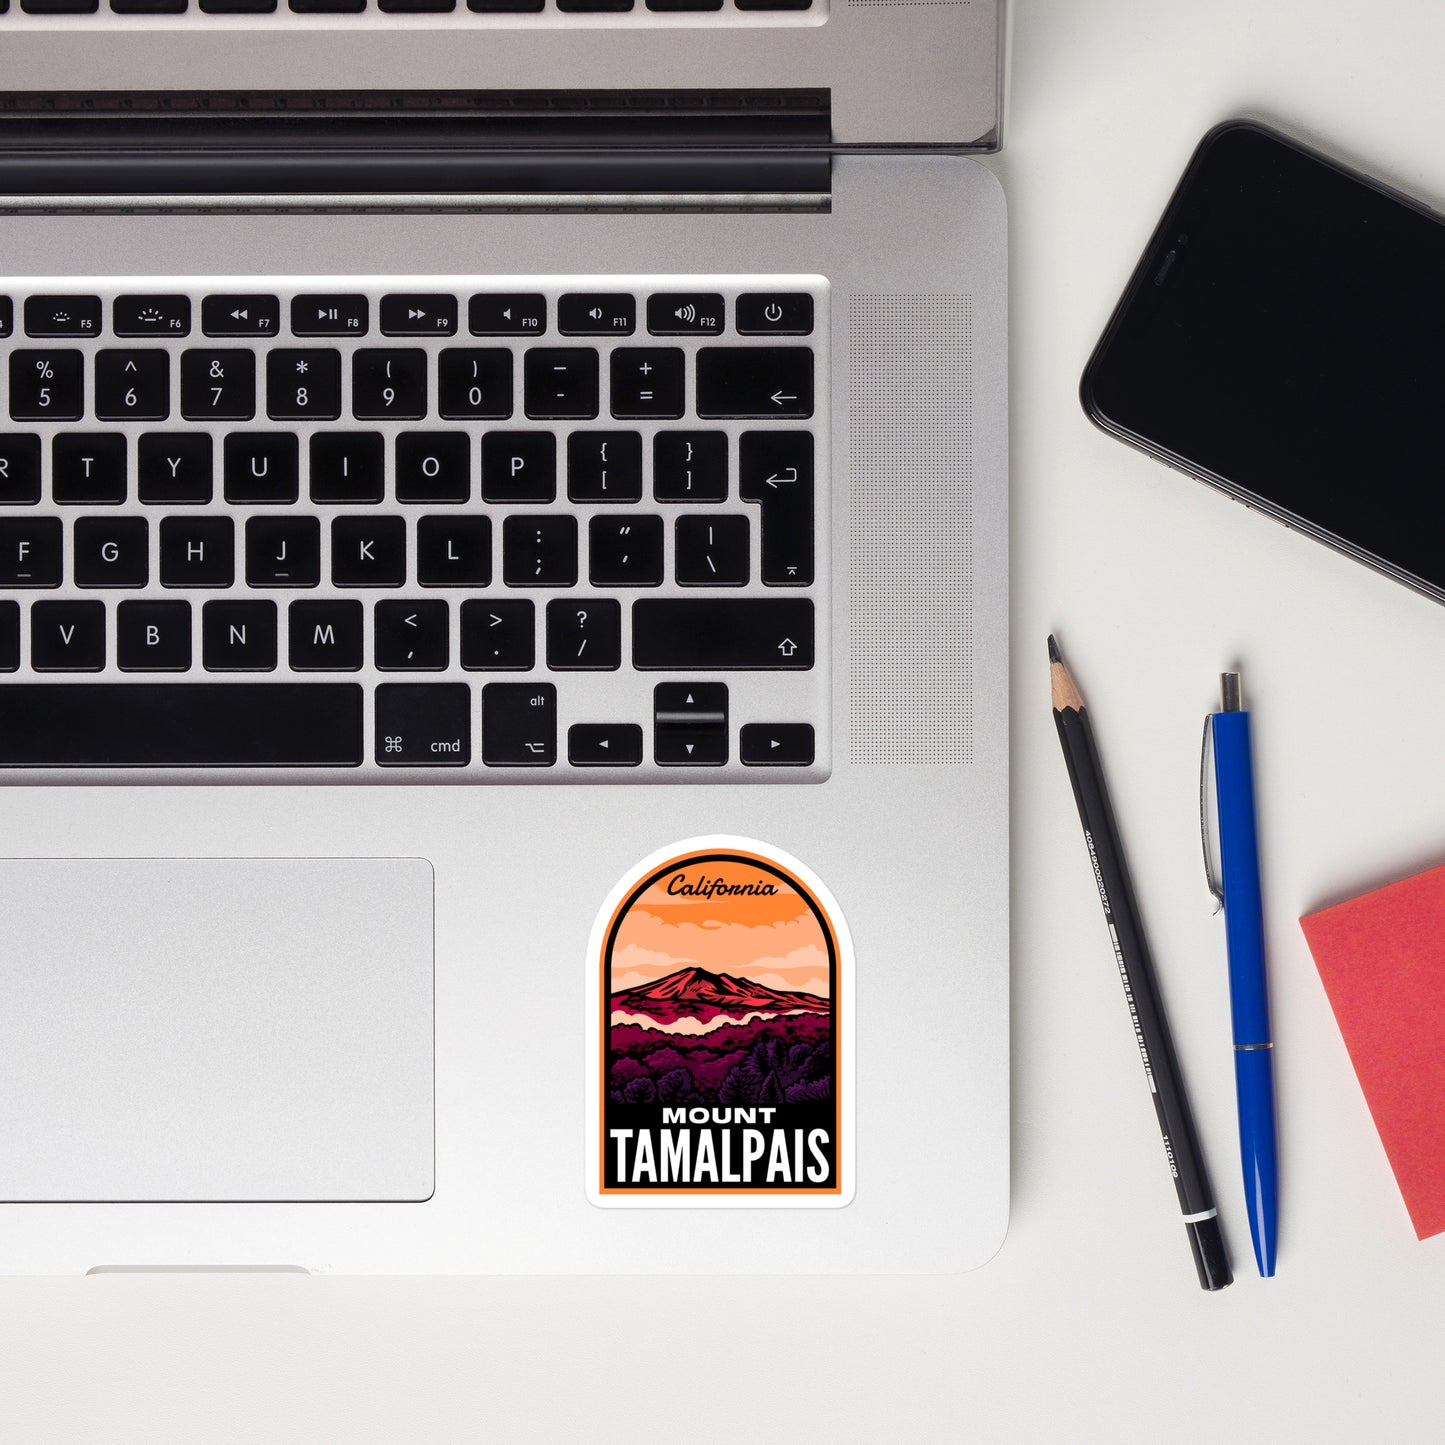 A sticker of Mount Tamalpais on a laptop